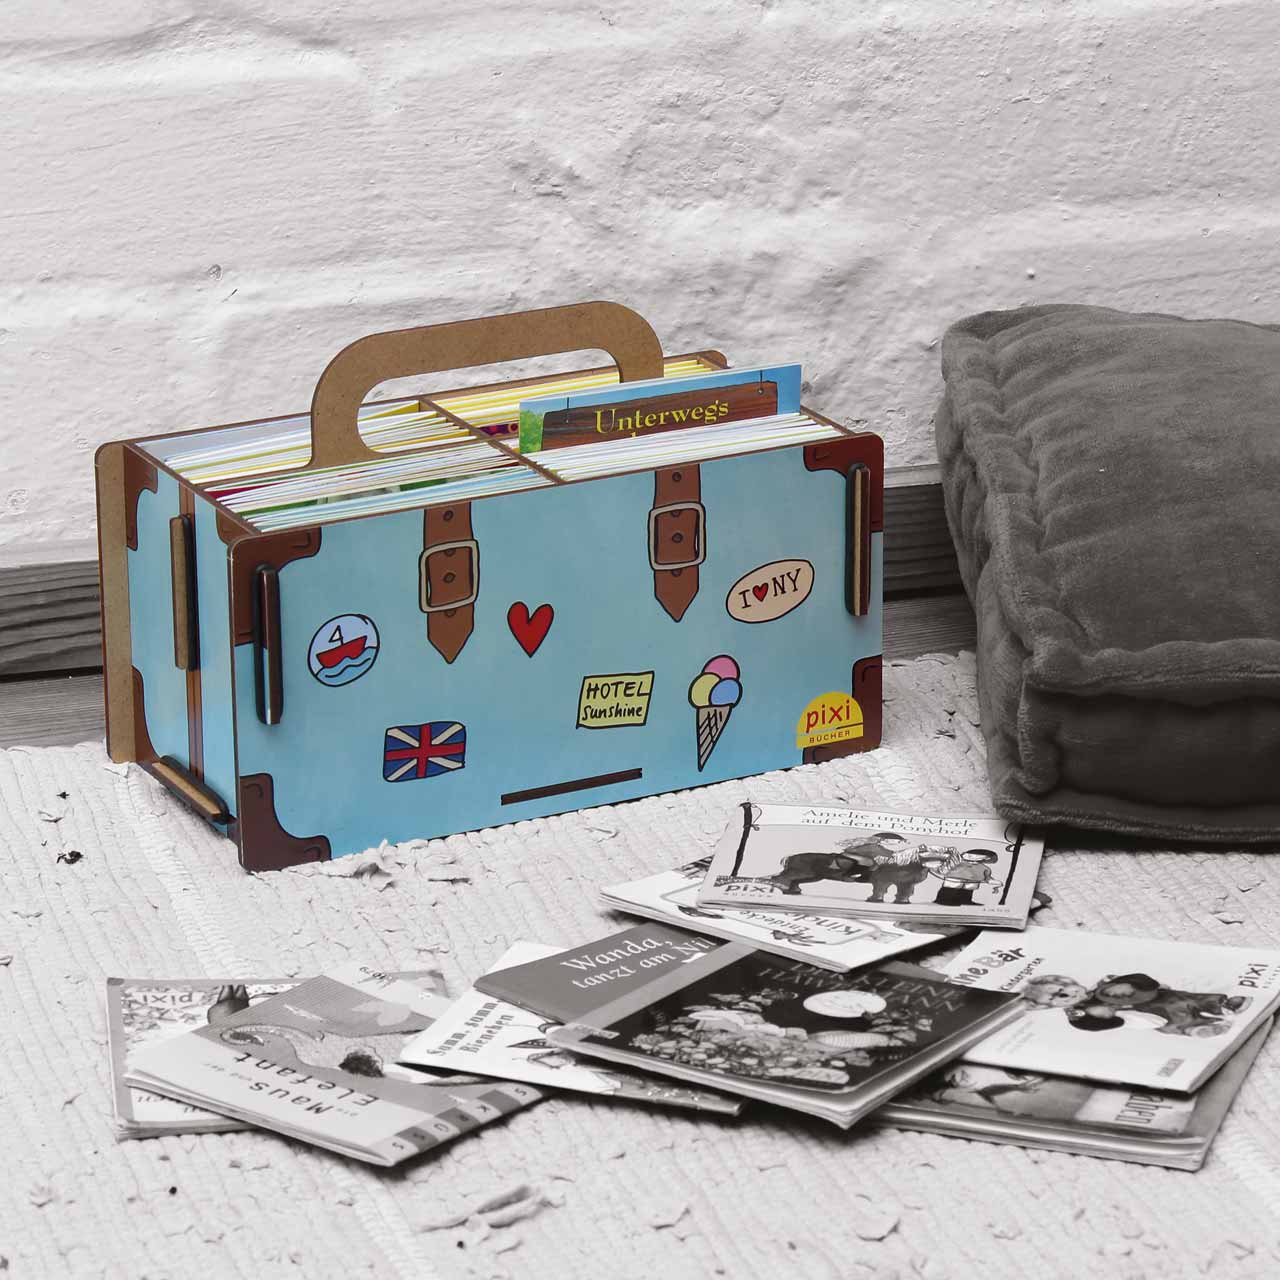 Pixi-Koffer als Aufbewahrungsbox für Pixi-Bücher